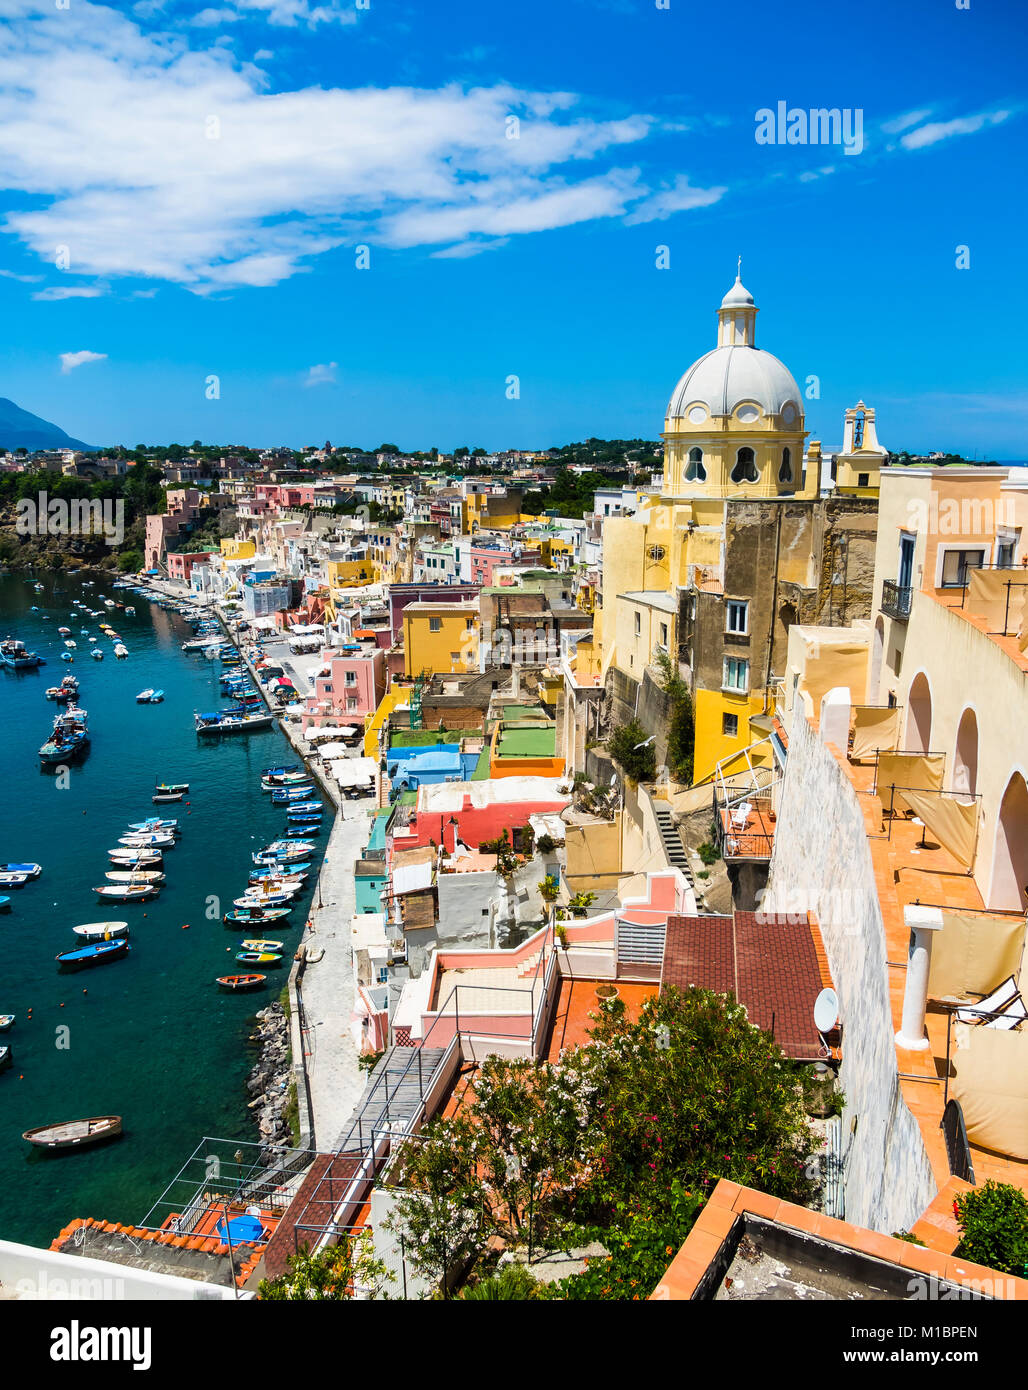 Vue sur l'île de Procida avec ses maisons colorées, le port et la Marina di Corricella, île de Procida Banque D'Images